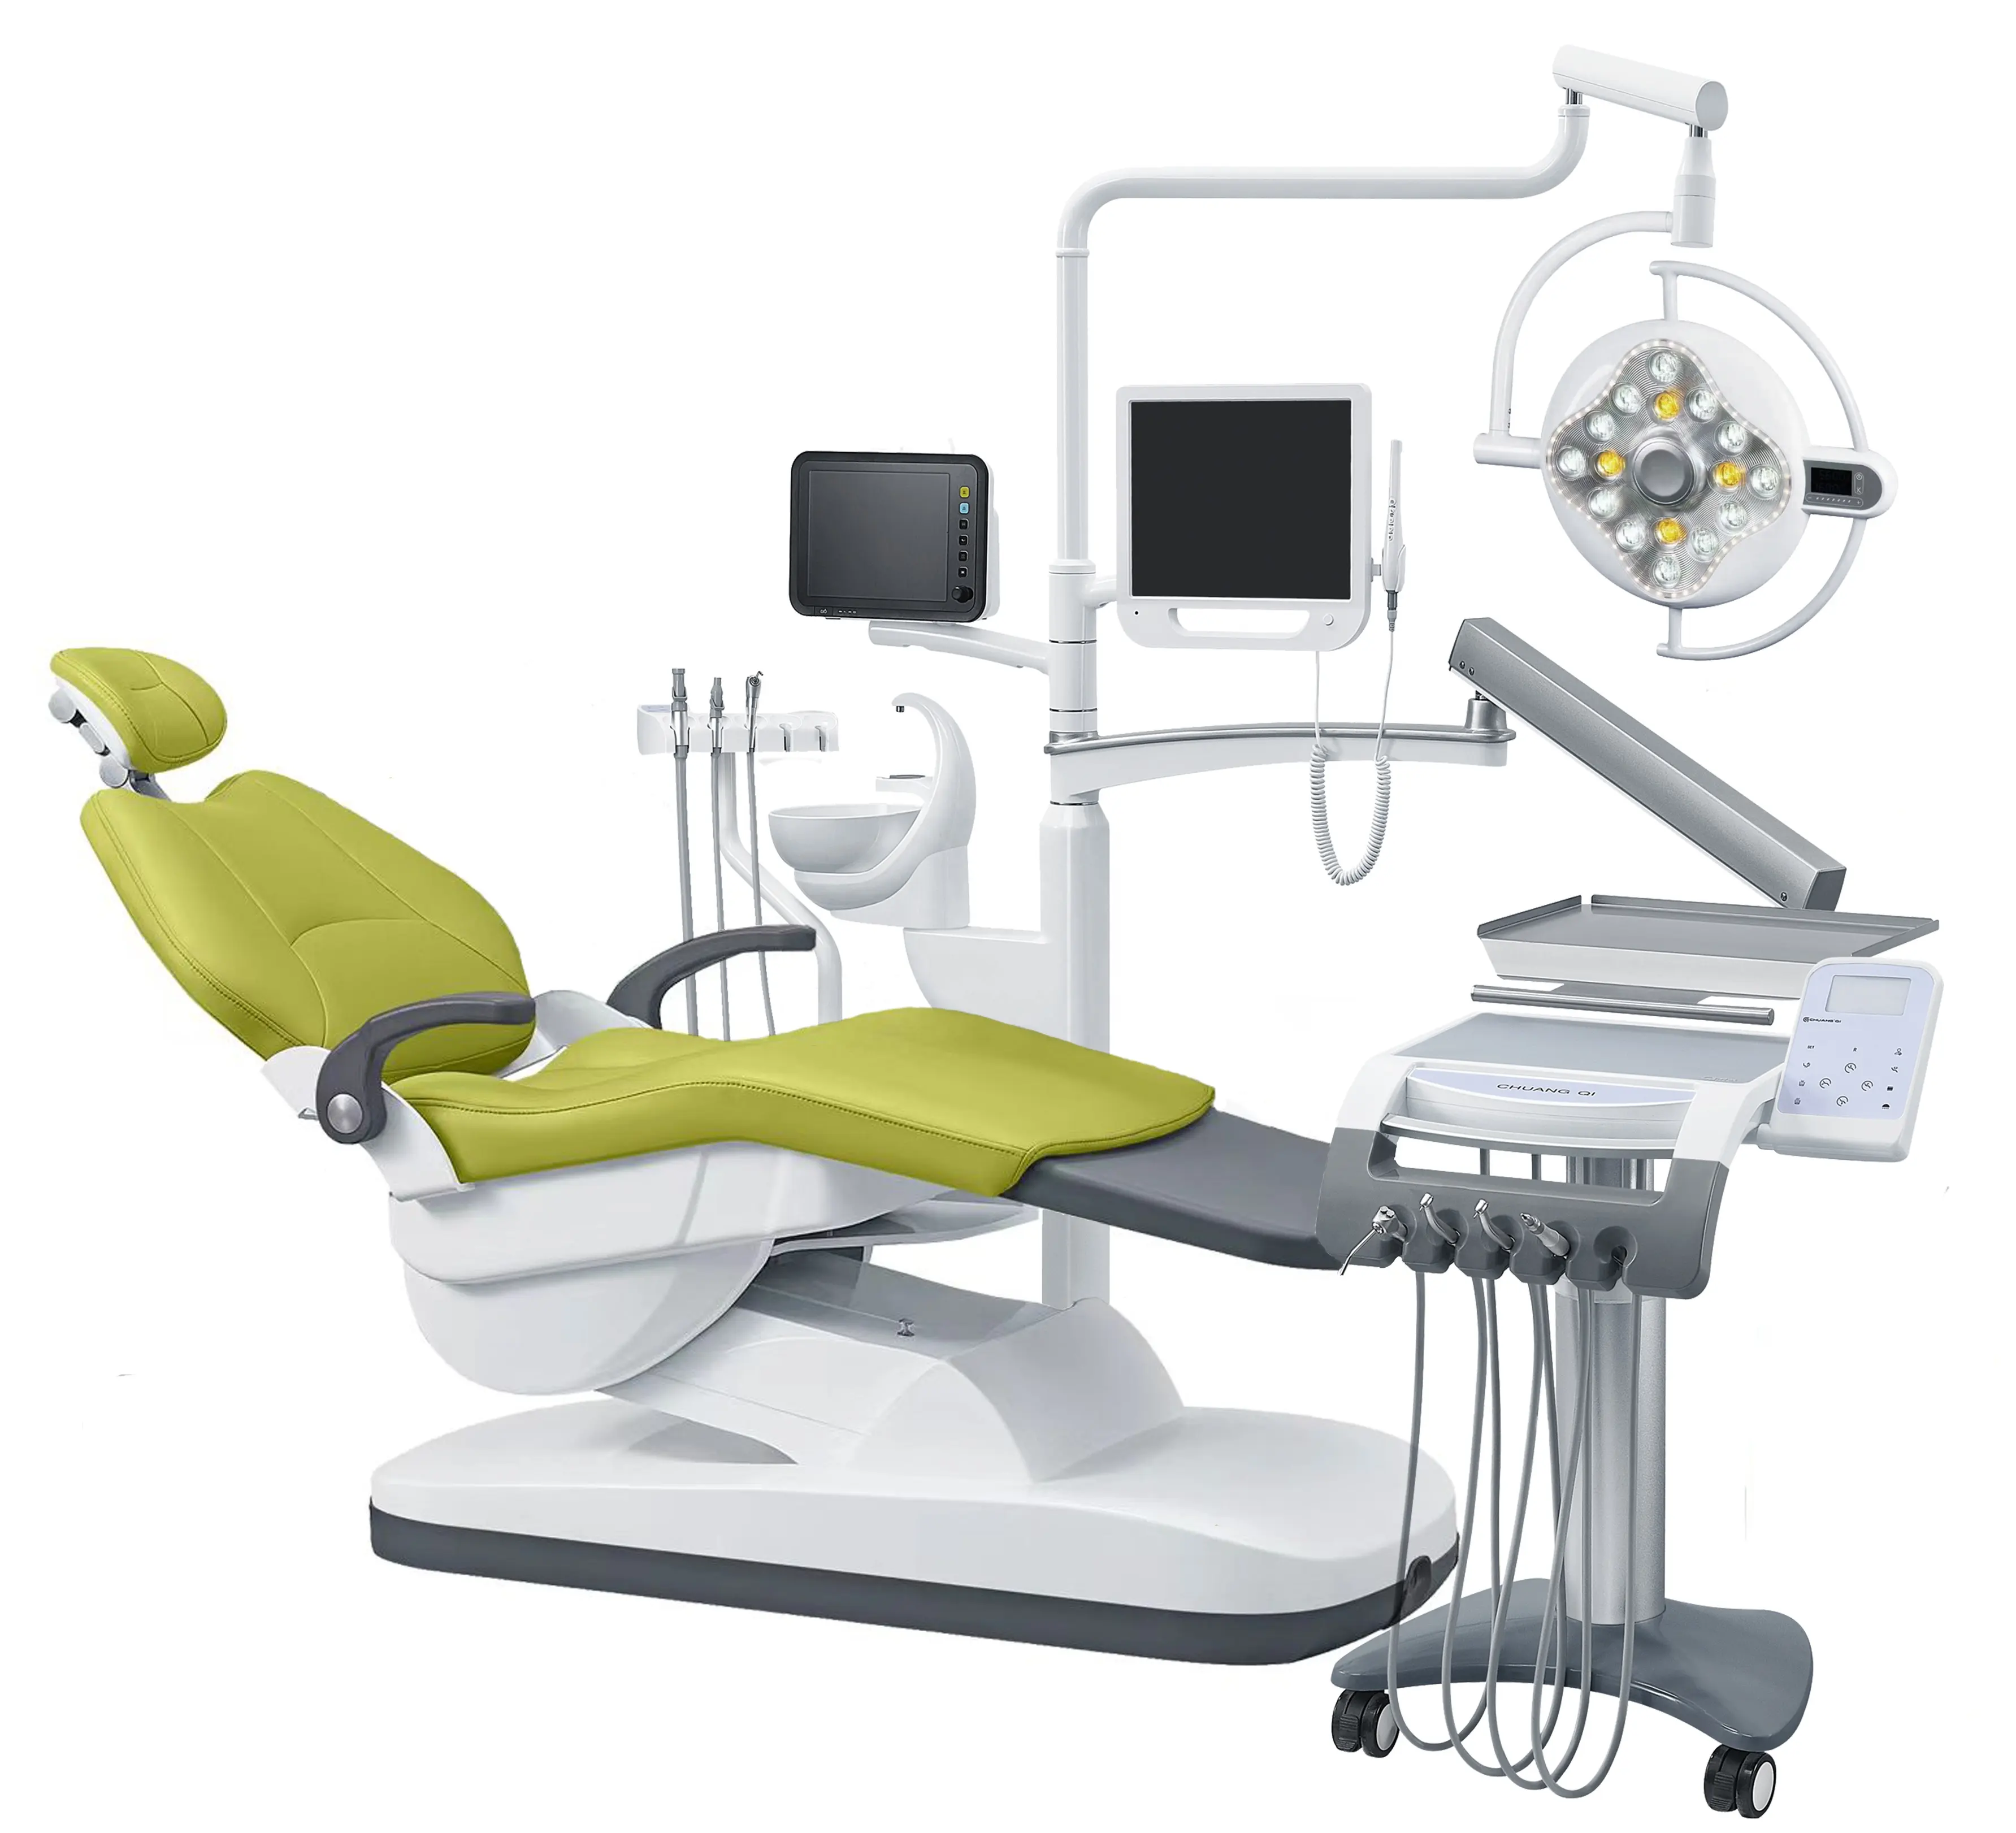 Instrumento de diagnóstico Dental apto para dentistas y profesionales dentales